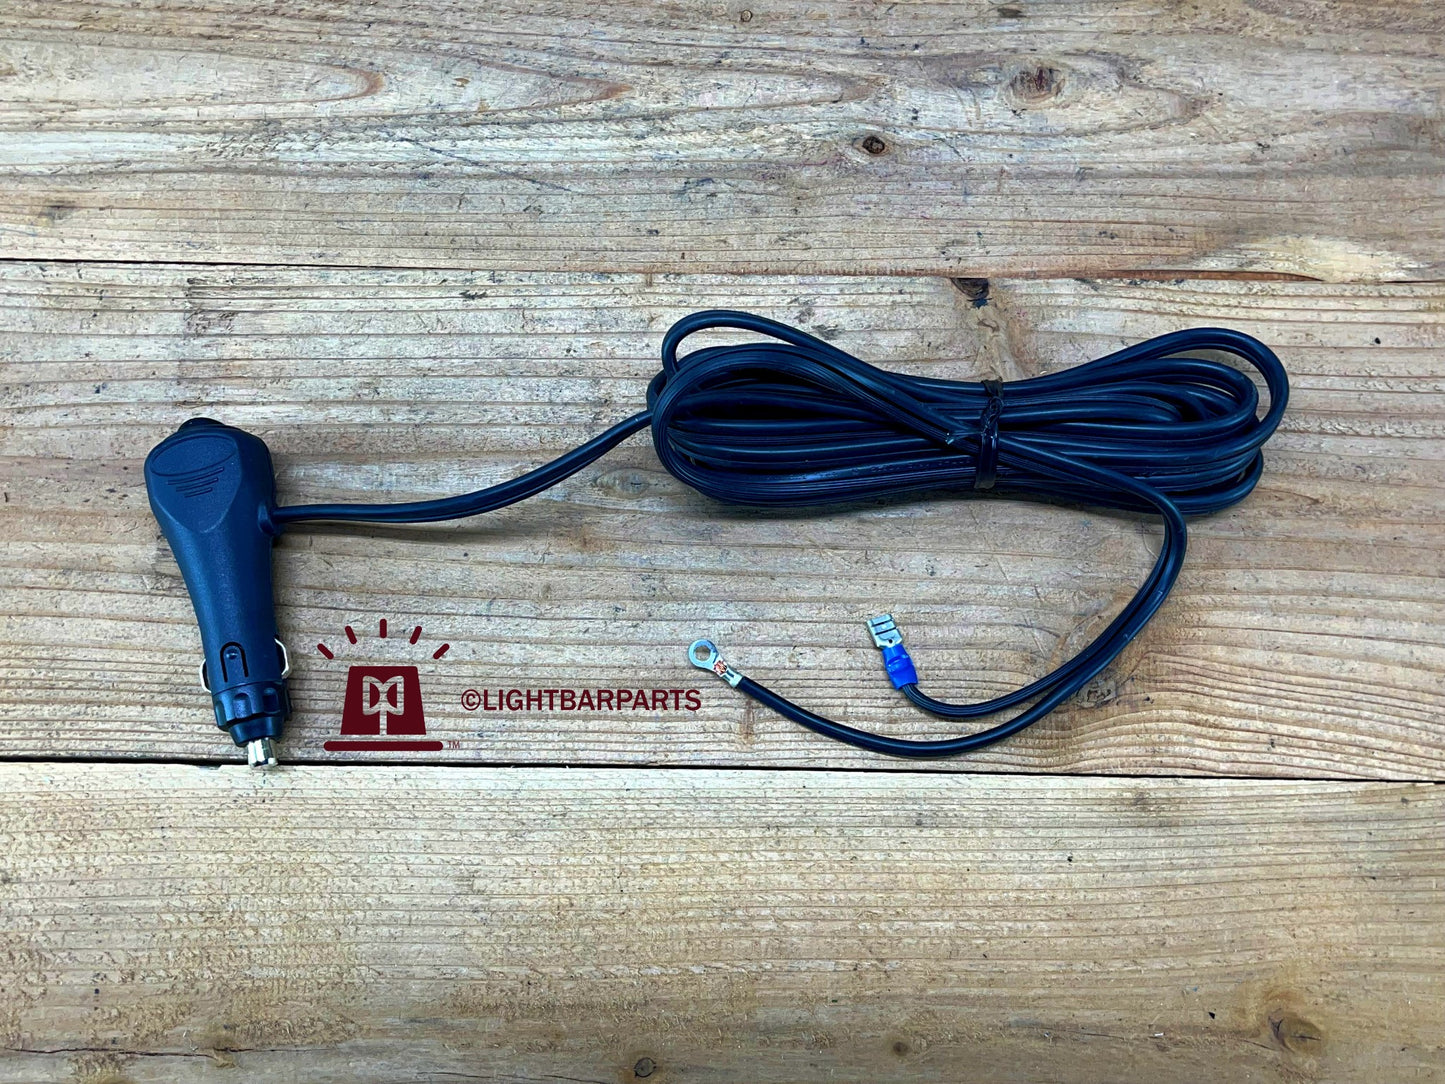 Code 3 PSE Force 4 LP Beacon Lightbar - Cigarette Lighter Plug Power Cord - New Old Stock